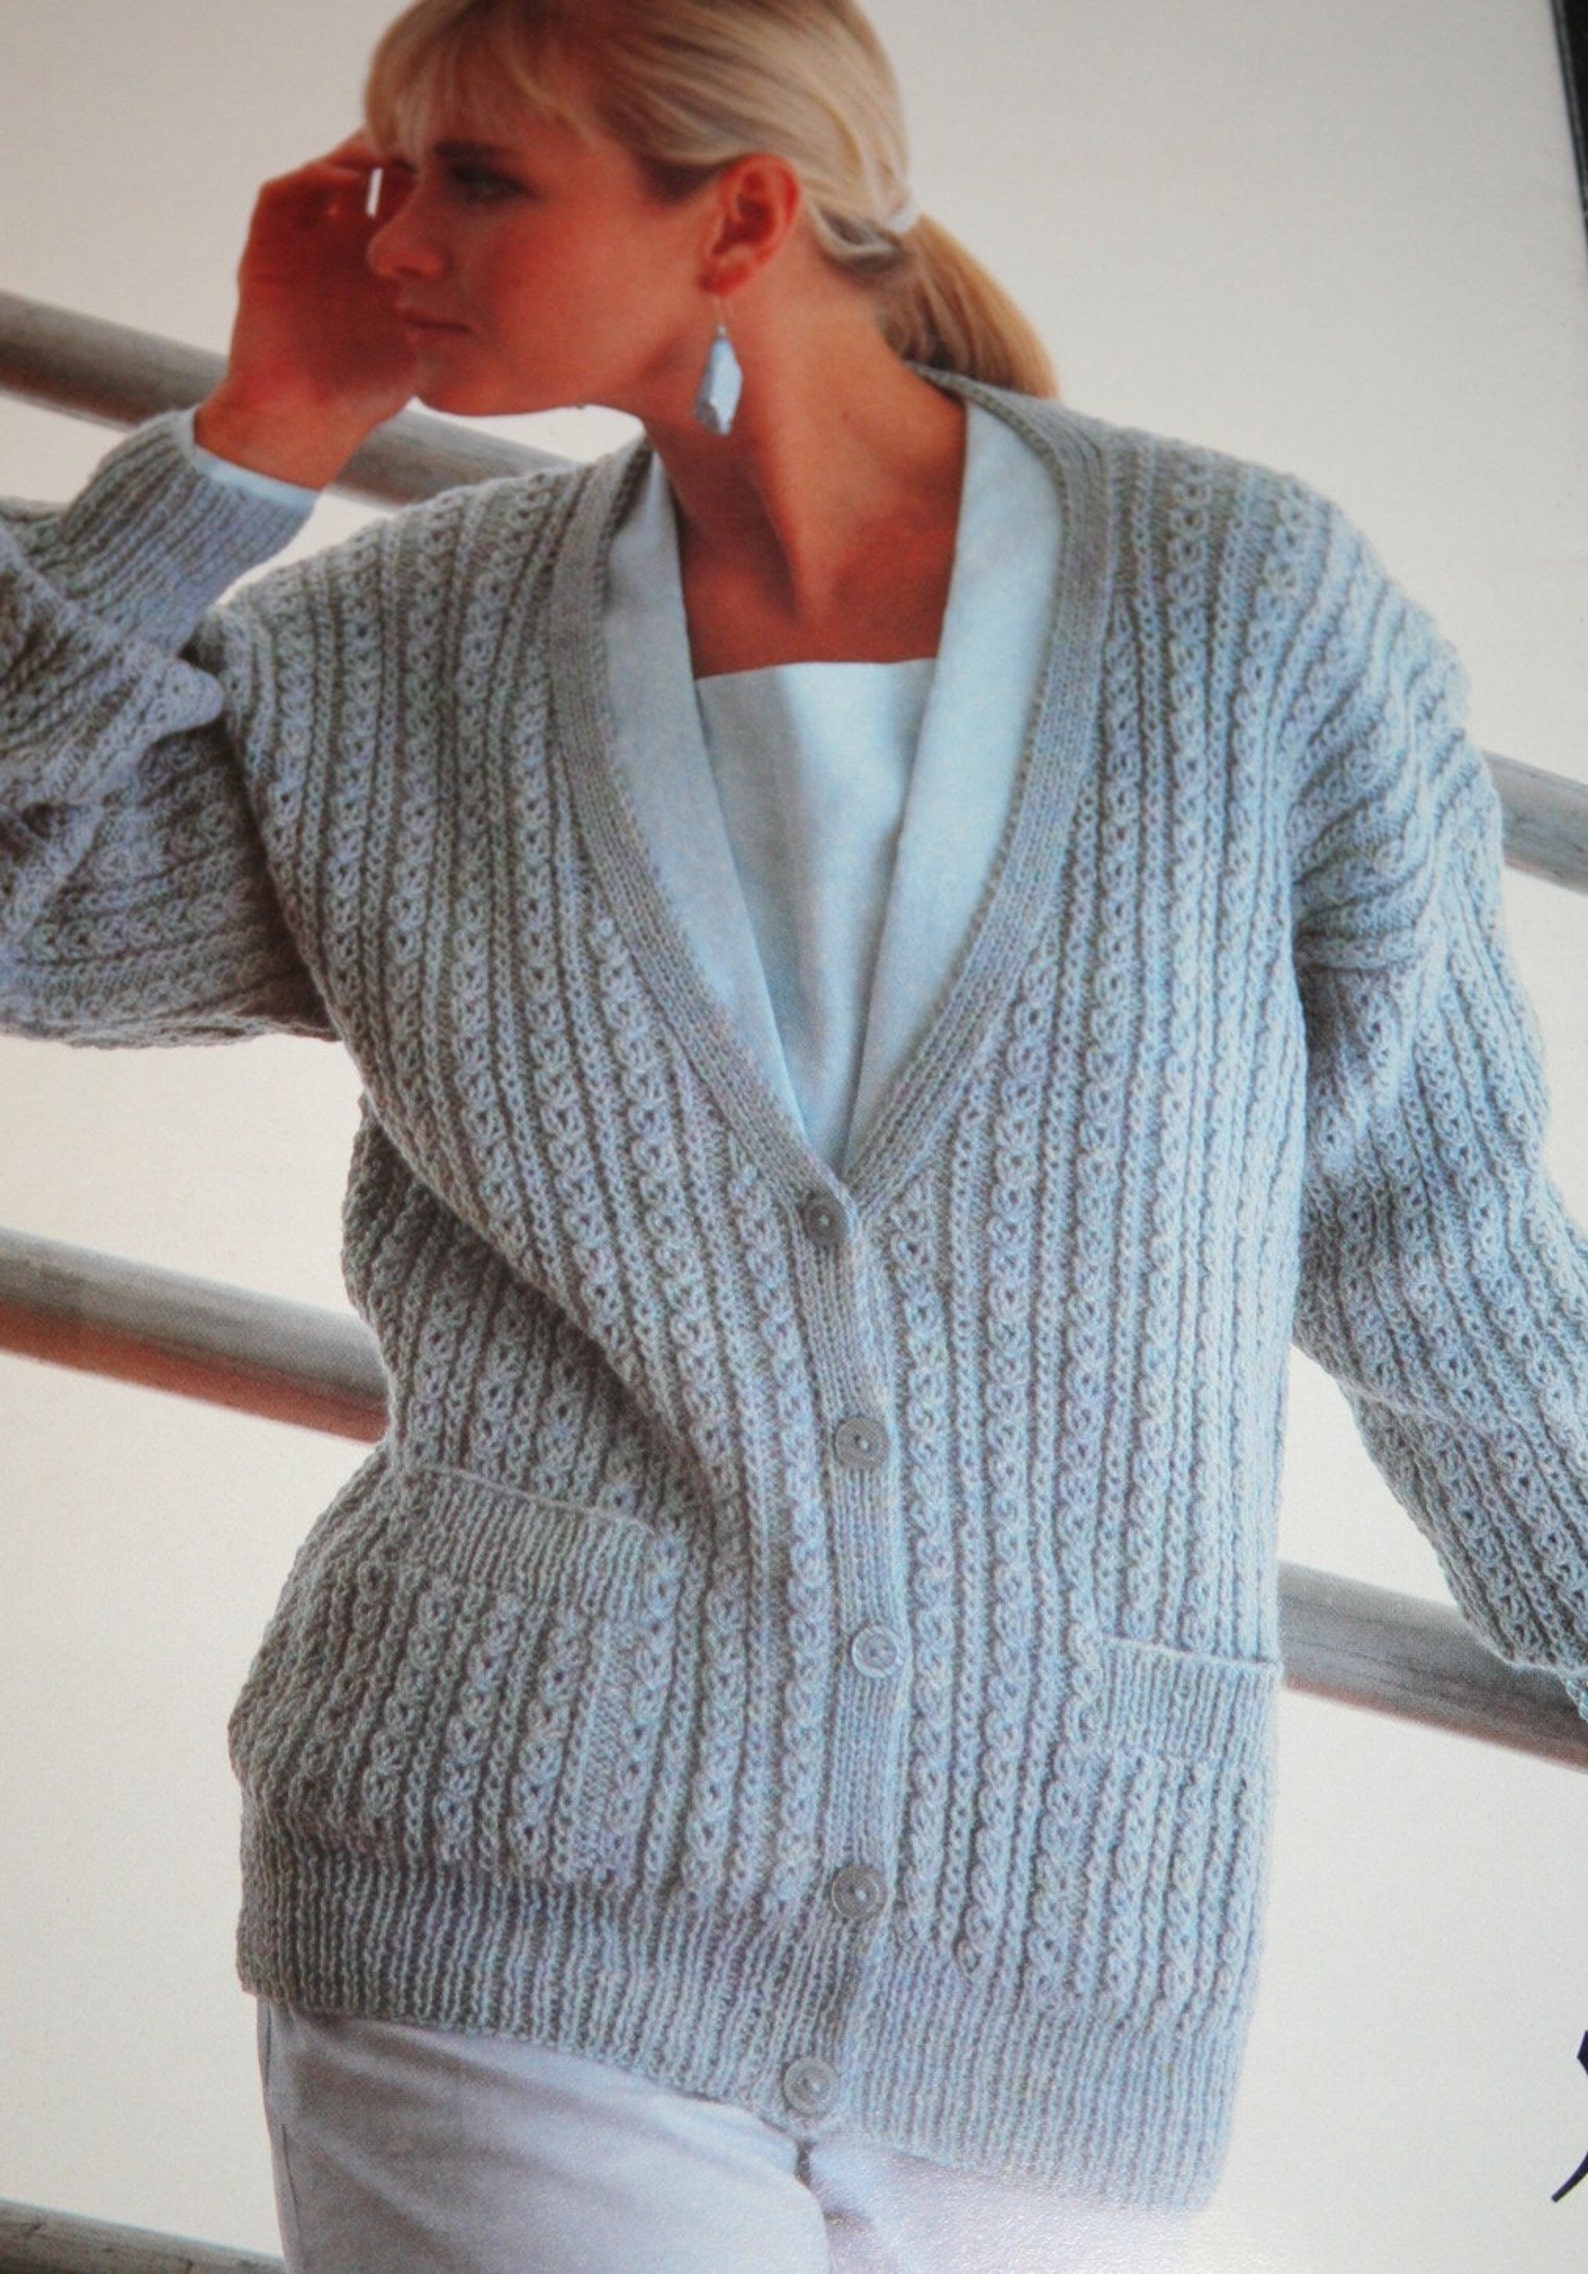 Sweater Knitting Patterns for Men & Women in DK Weight Yarn | Etsy